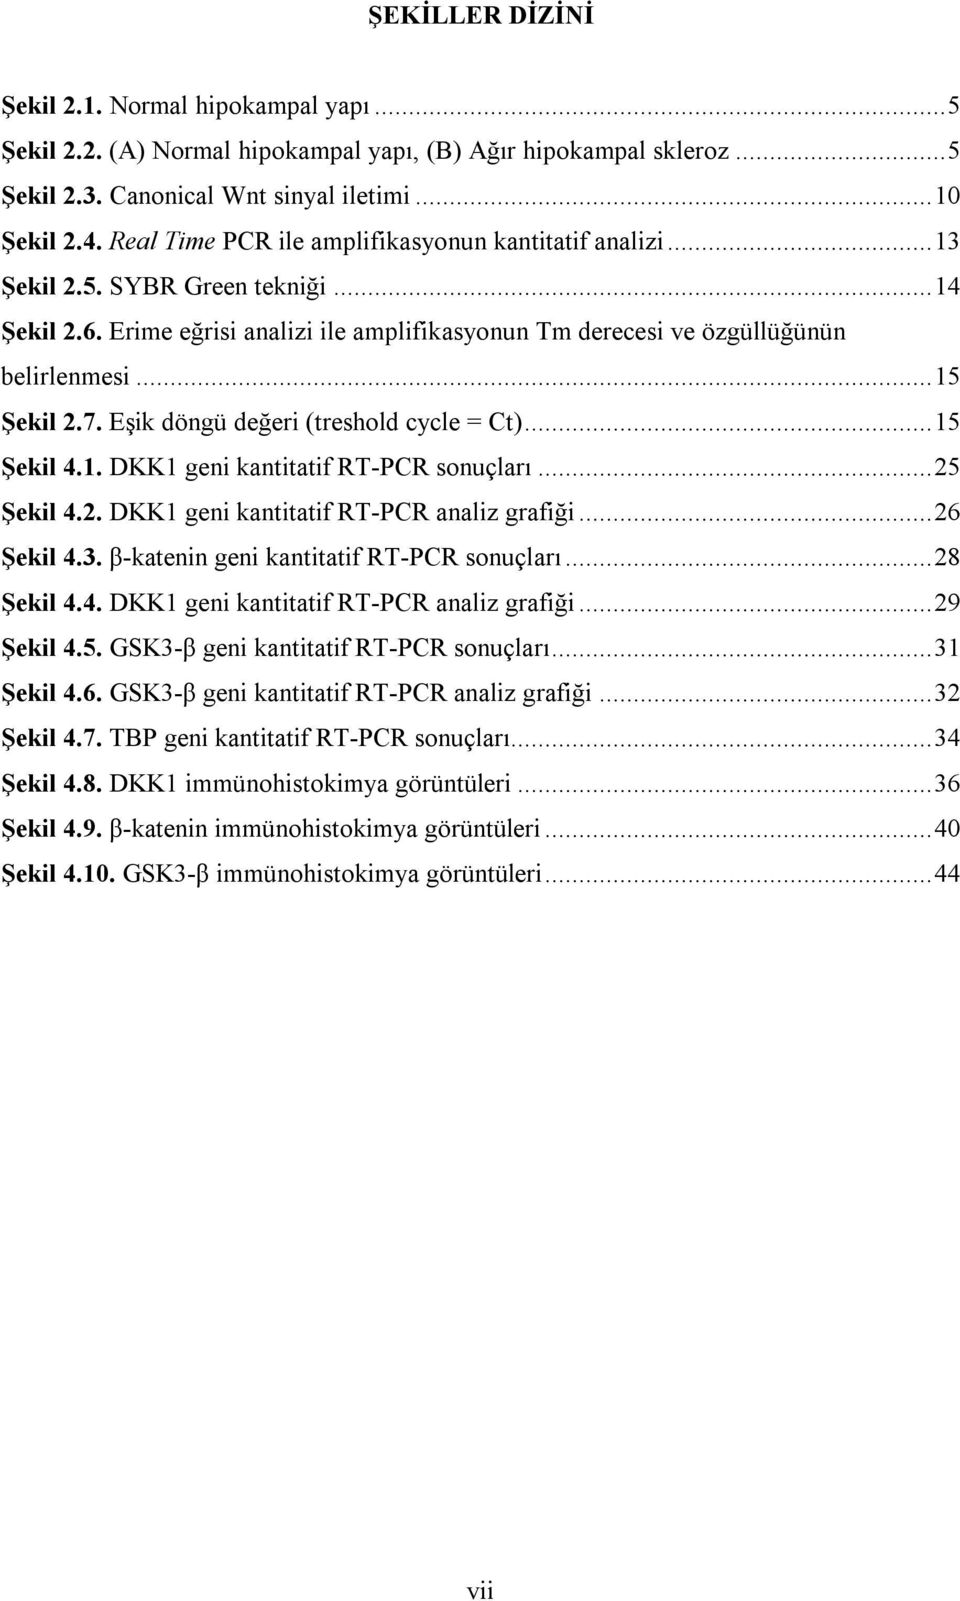 7. Eşik döngü değeri (treshold cycle = Ct)...15 Şekil 4.1. DKK1 geni kantitatif RT-PCR sonuçları...25 Şekil 4.2. DKK1 geni kantitatif RT-PCR analiz grafiği...26 Şekil 4.3.